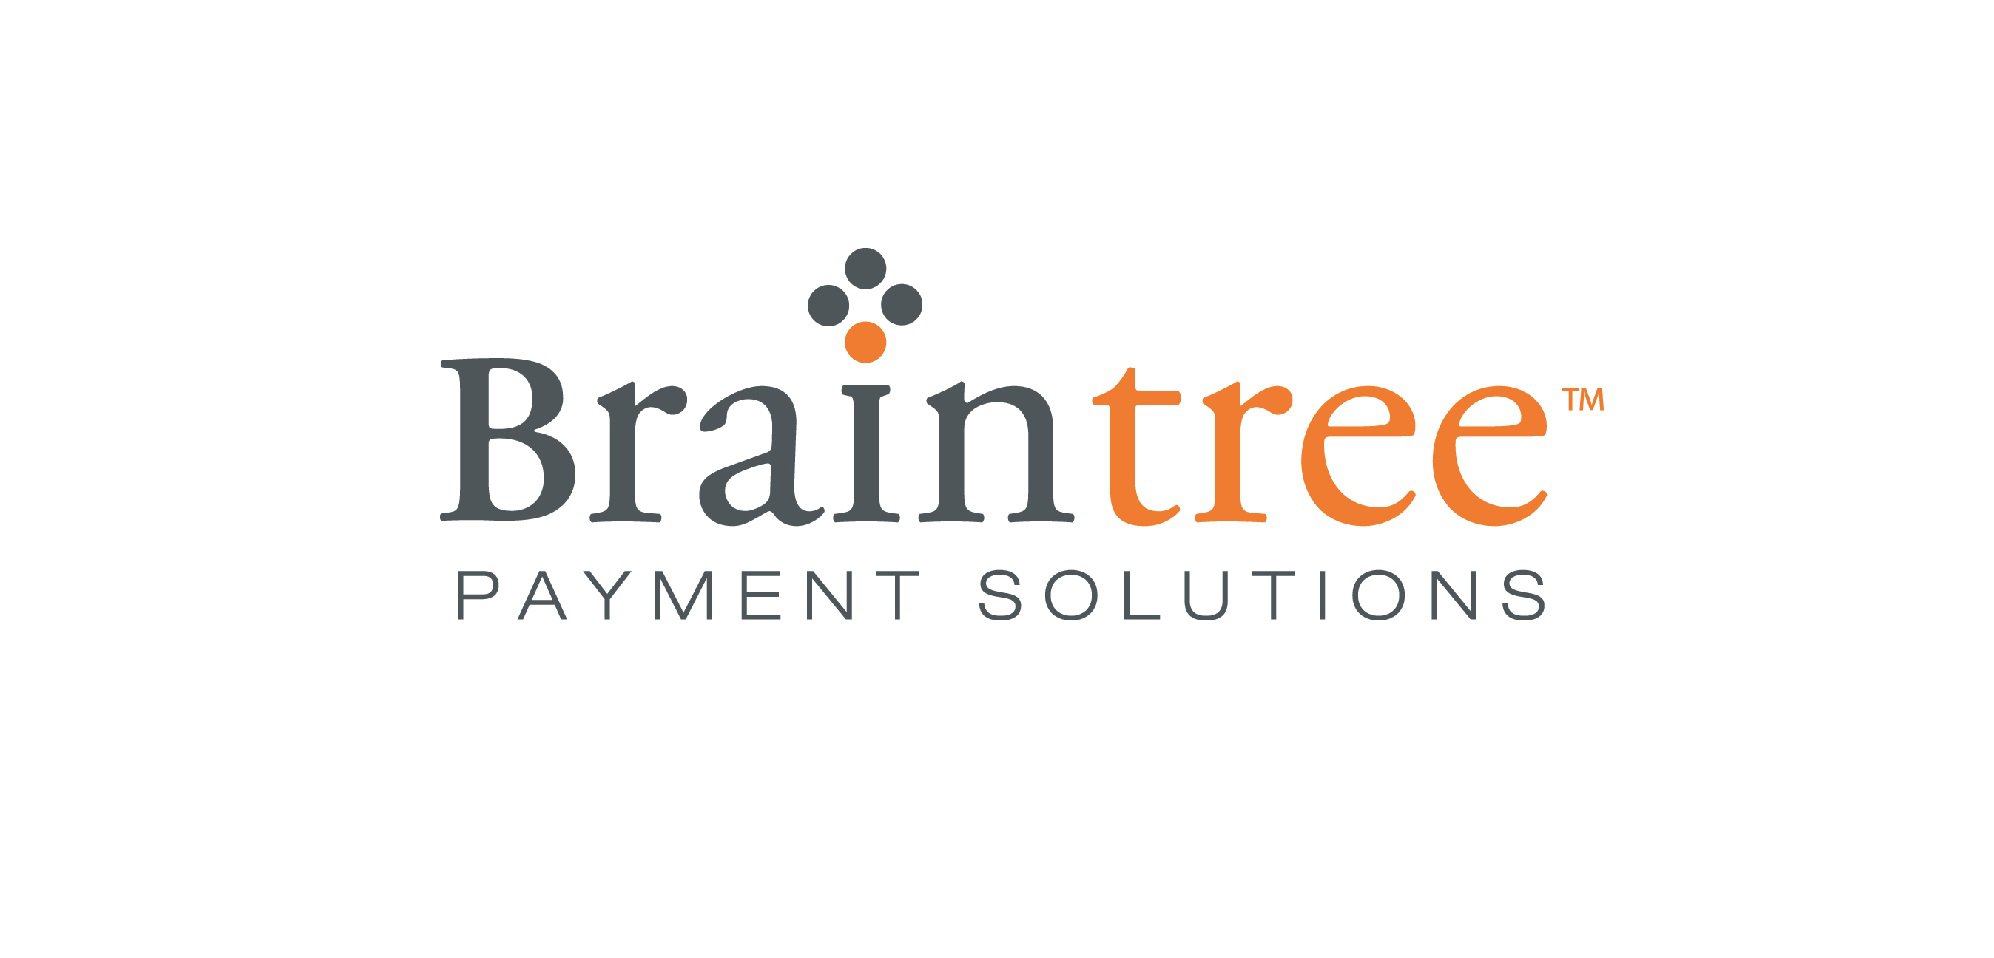 Braintree. Braintree payment solutions. Braintree payment logo. Braintree PNG.